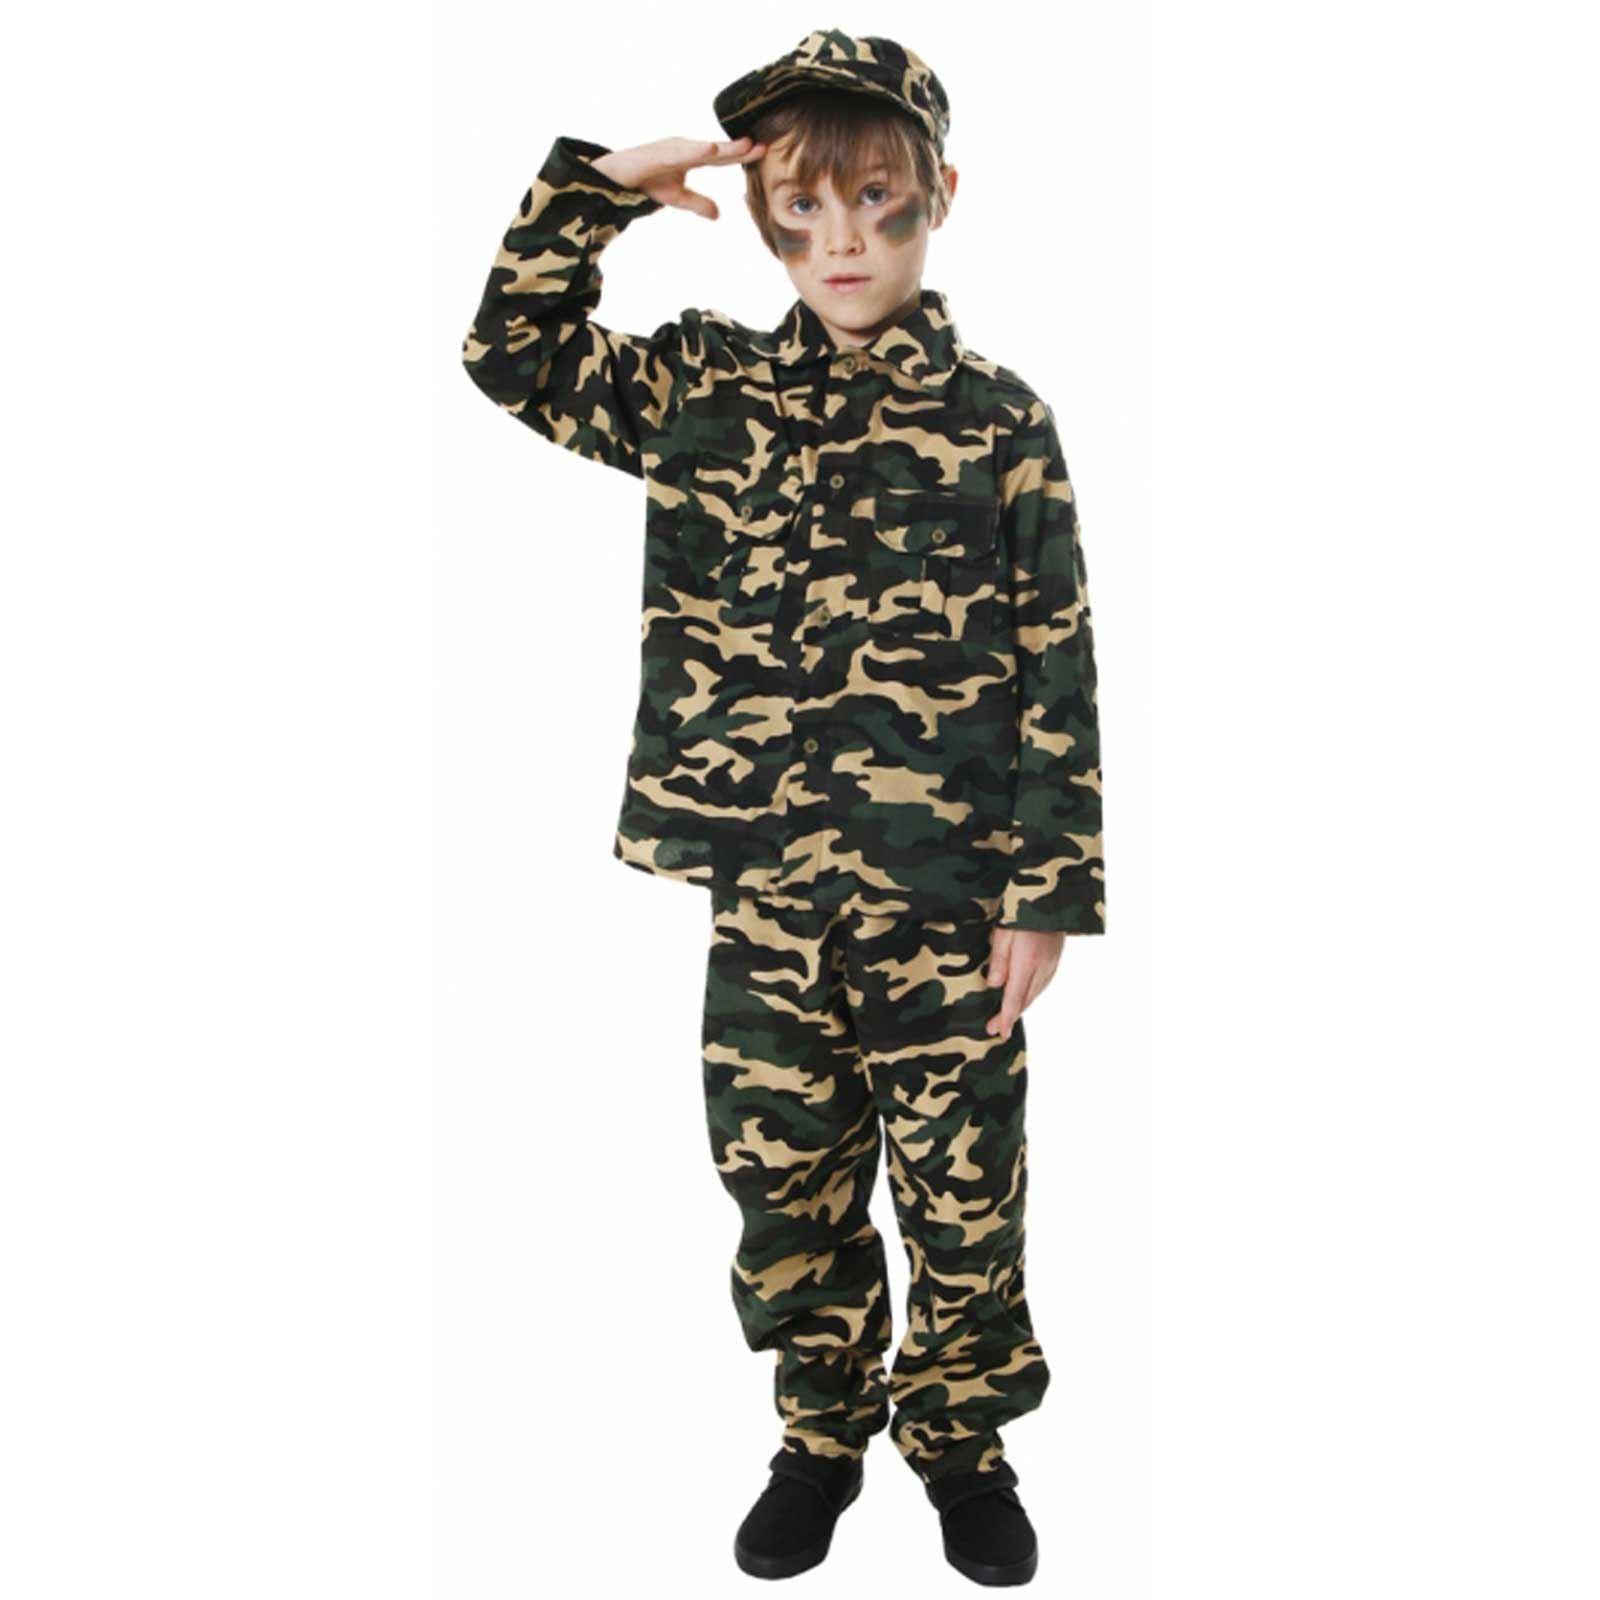 Мальчик в военной форме